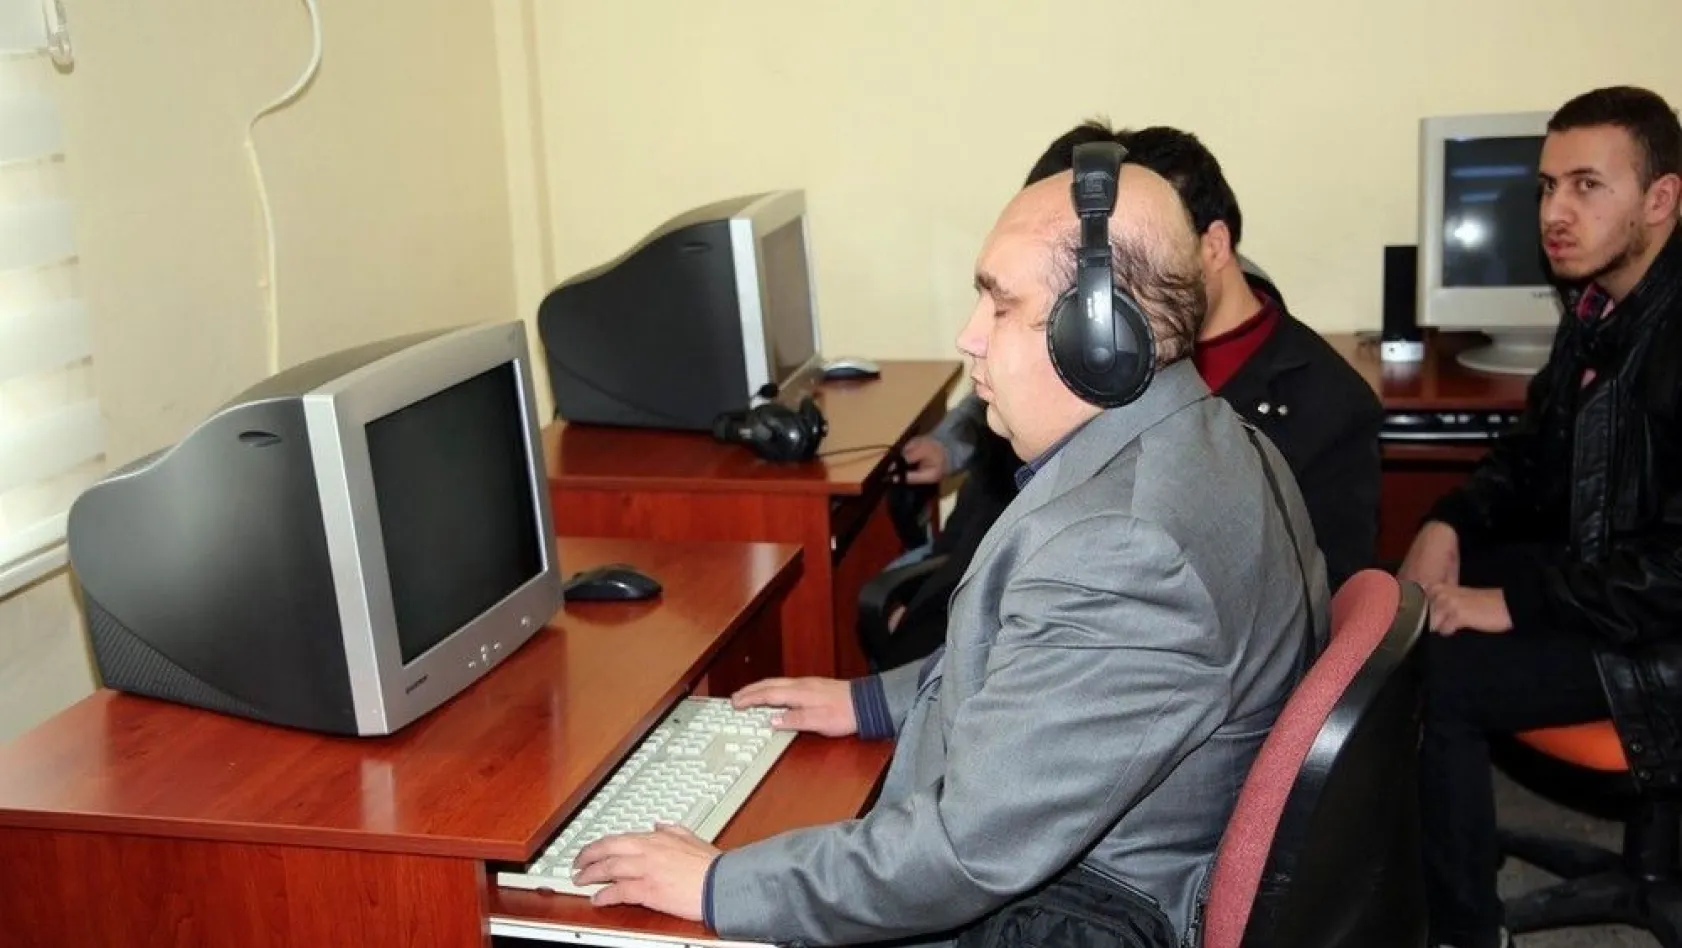 Sivas'ta görme engelliler bilgisayar kullanmayı öğrenecek
